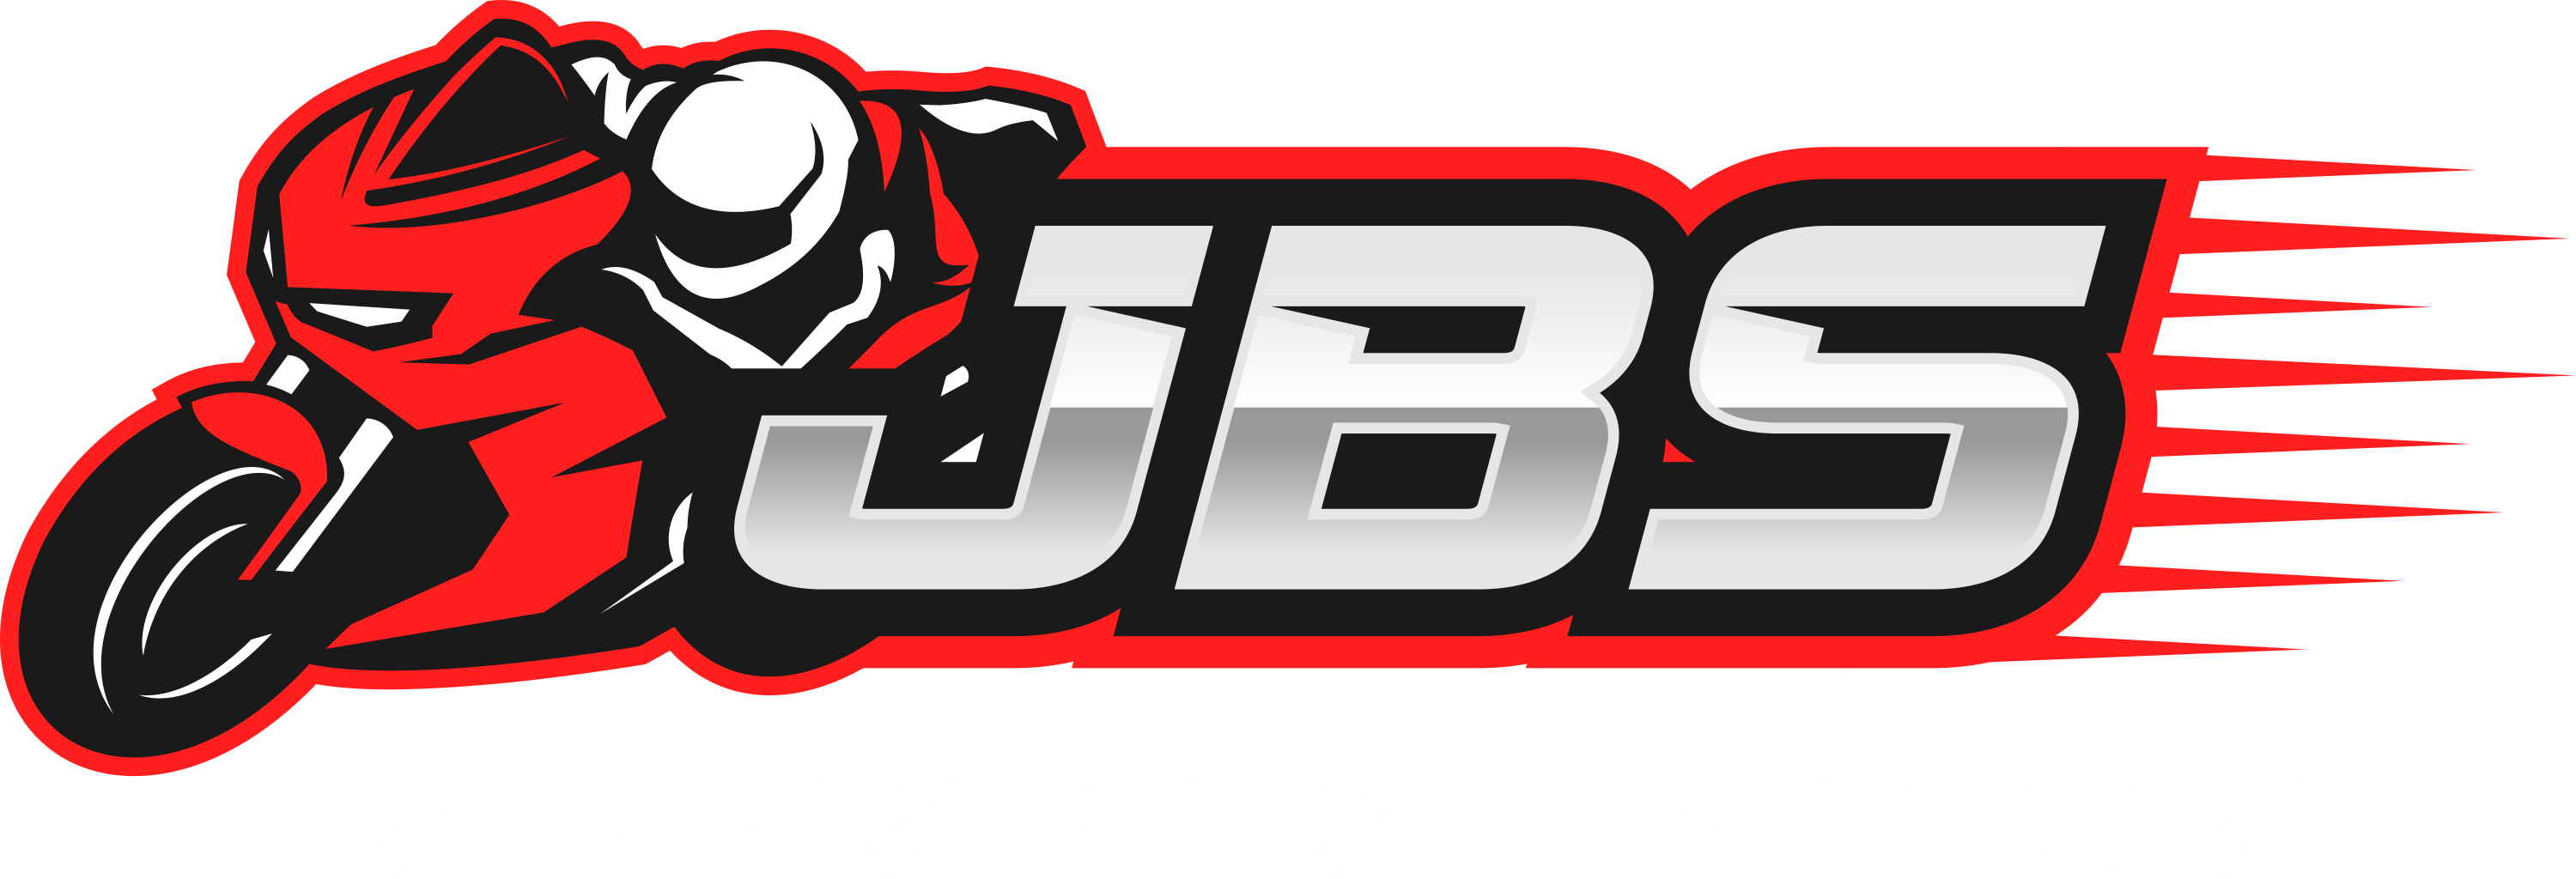 JBS Motorcycles Pty Ltd t/a Jap Bike Spares logo